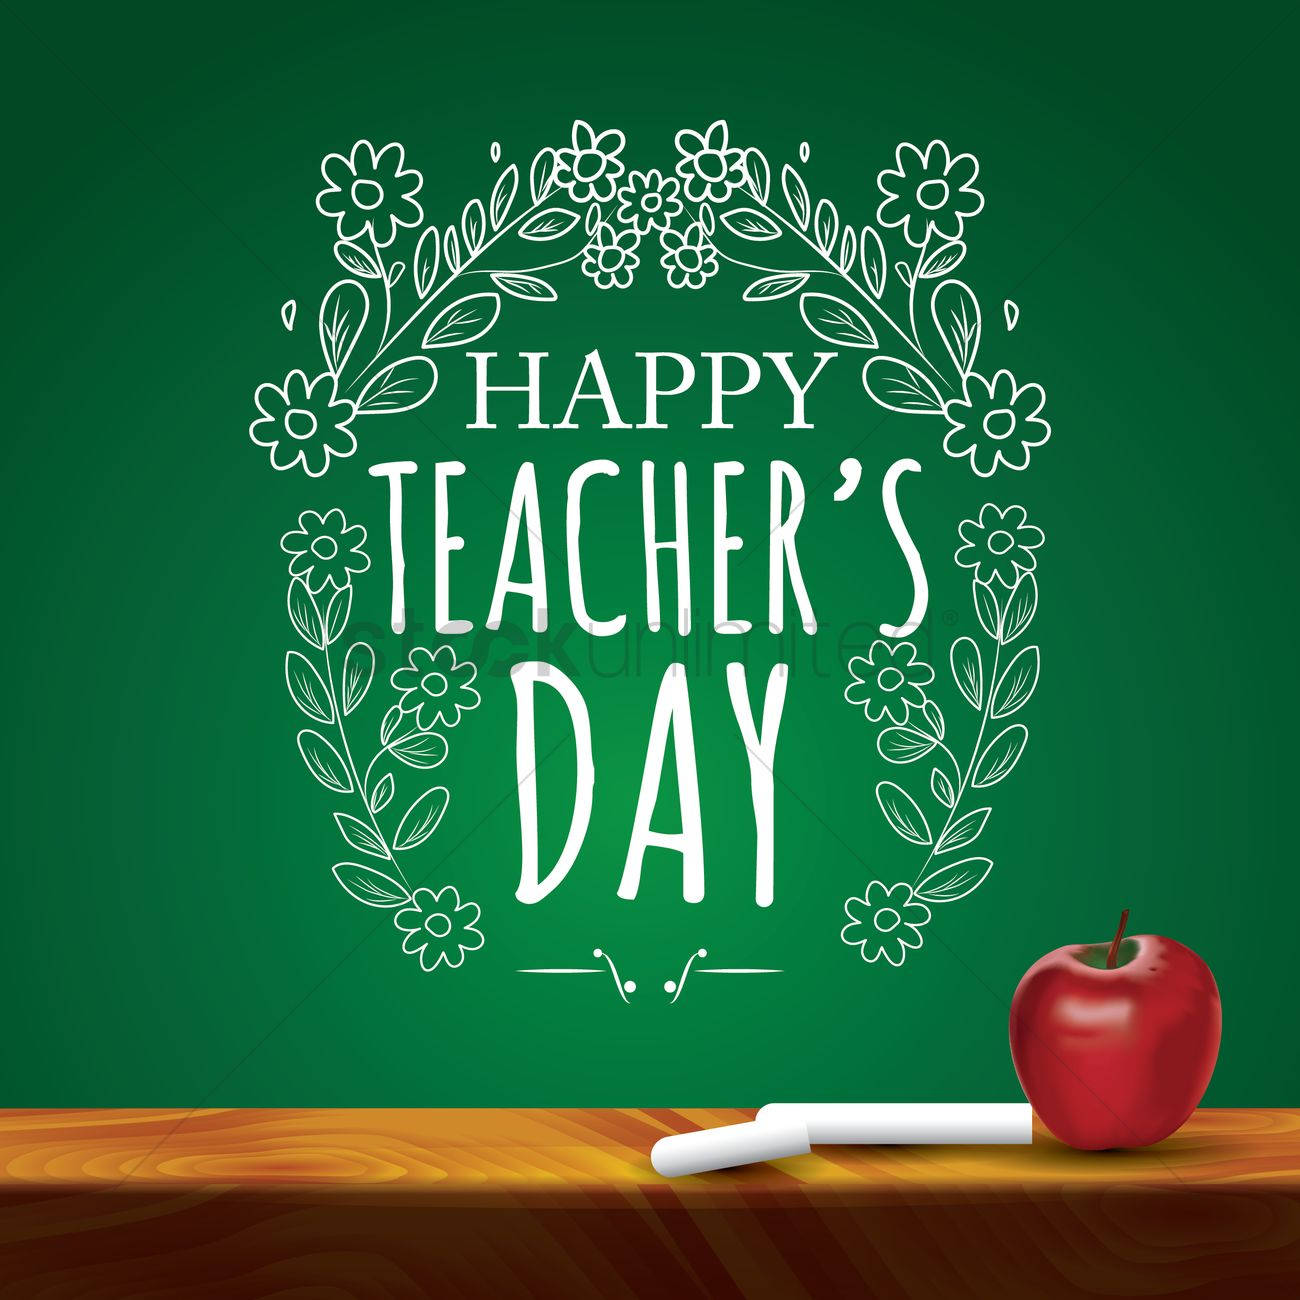 Happy Teachers' Day Chalkboard Wallpaper